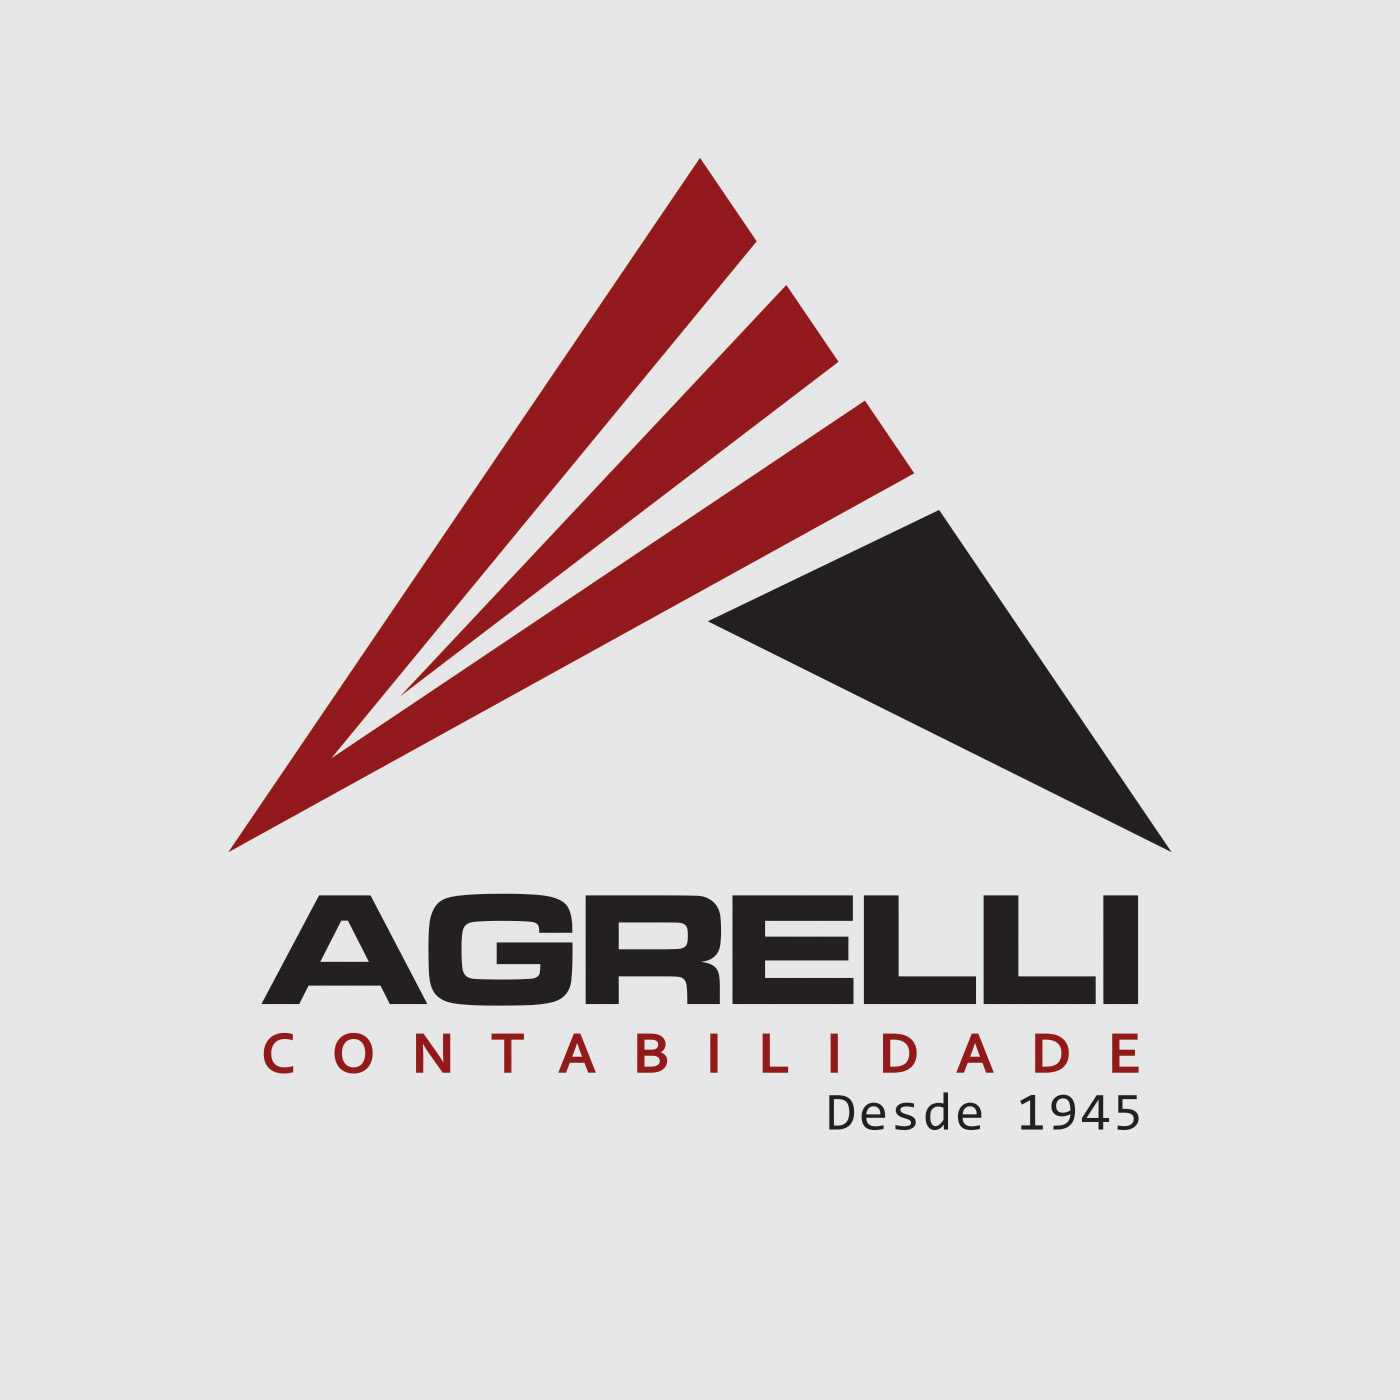 AGRELLICAST - O Podcast da Agrelli Contabilidade